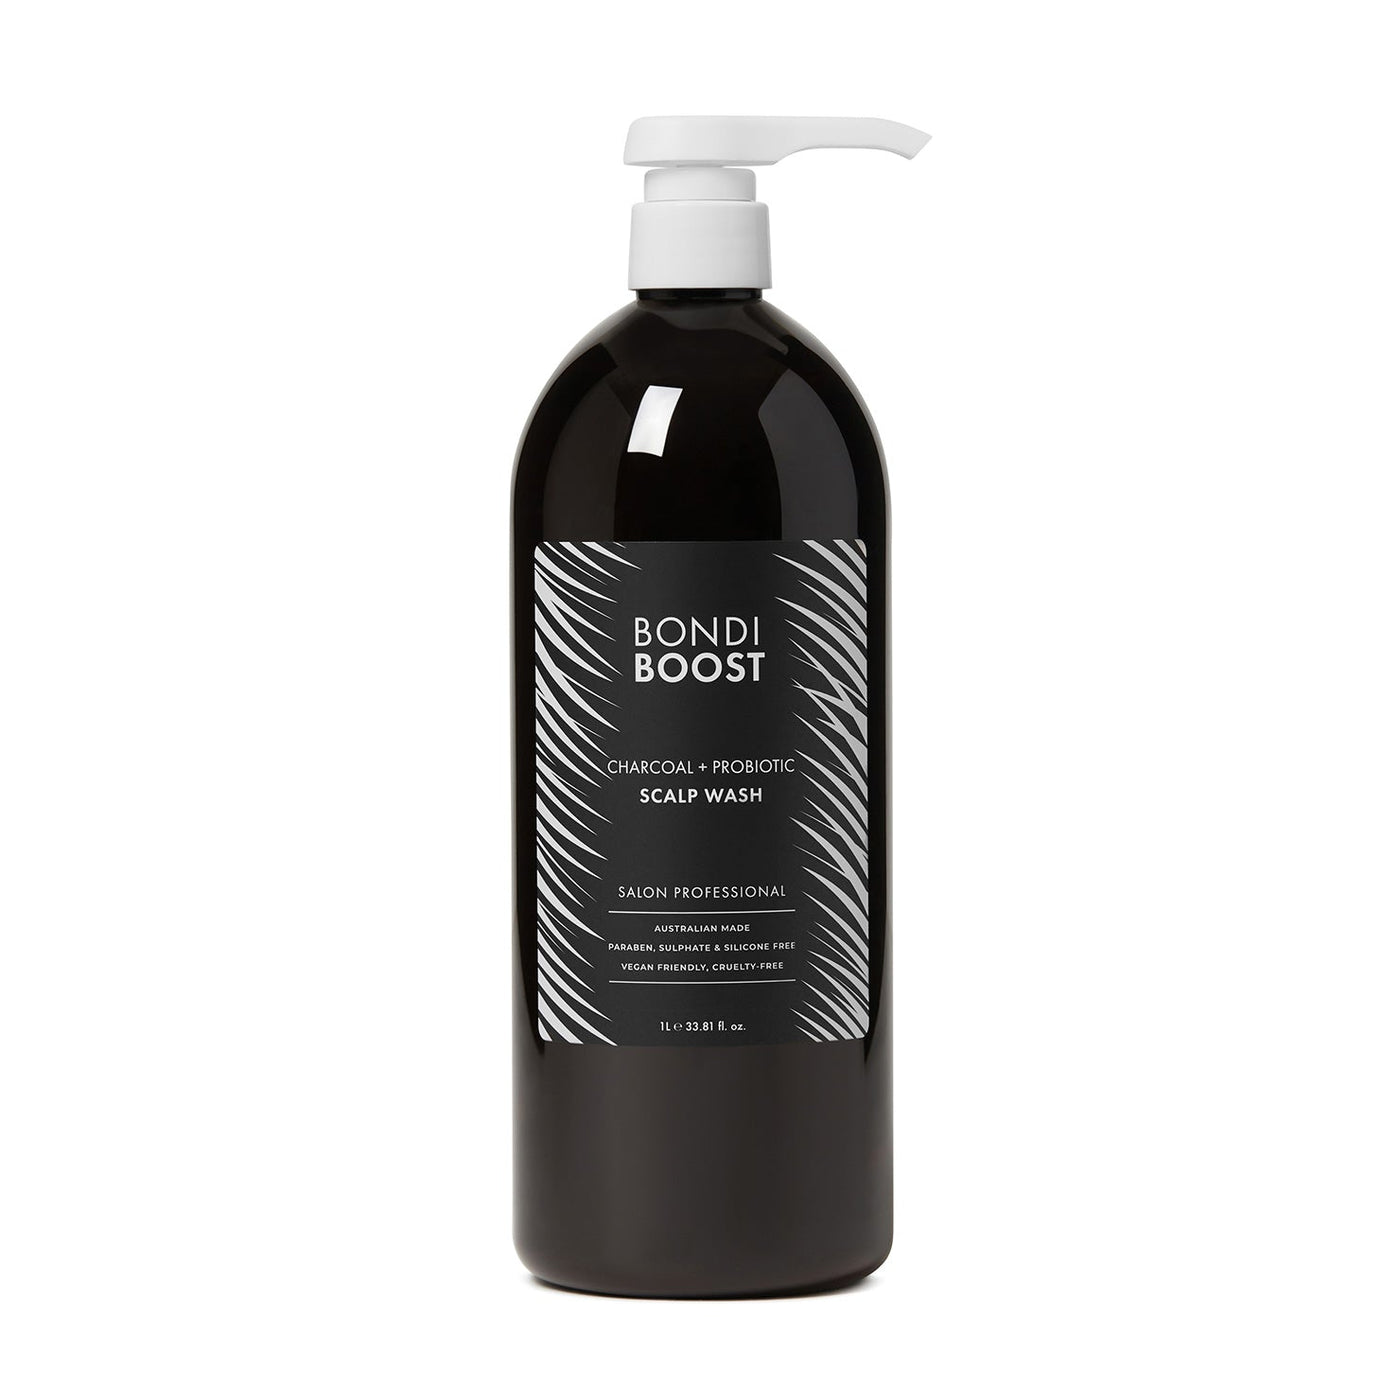 BondiBoost Charcoal + Probiotic Scalp Wash 1 Litre